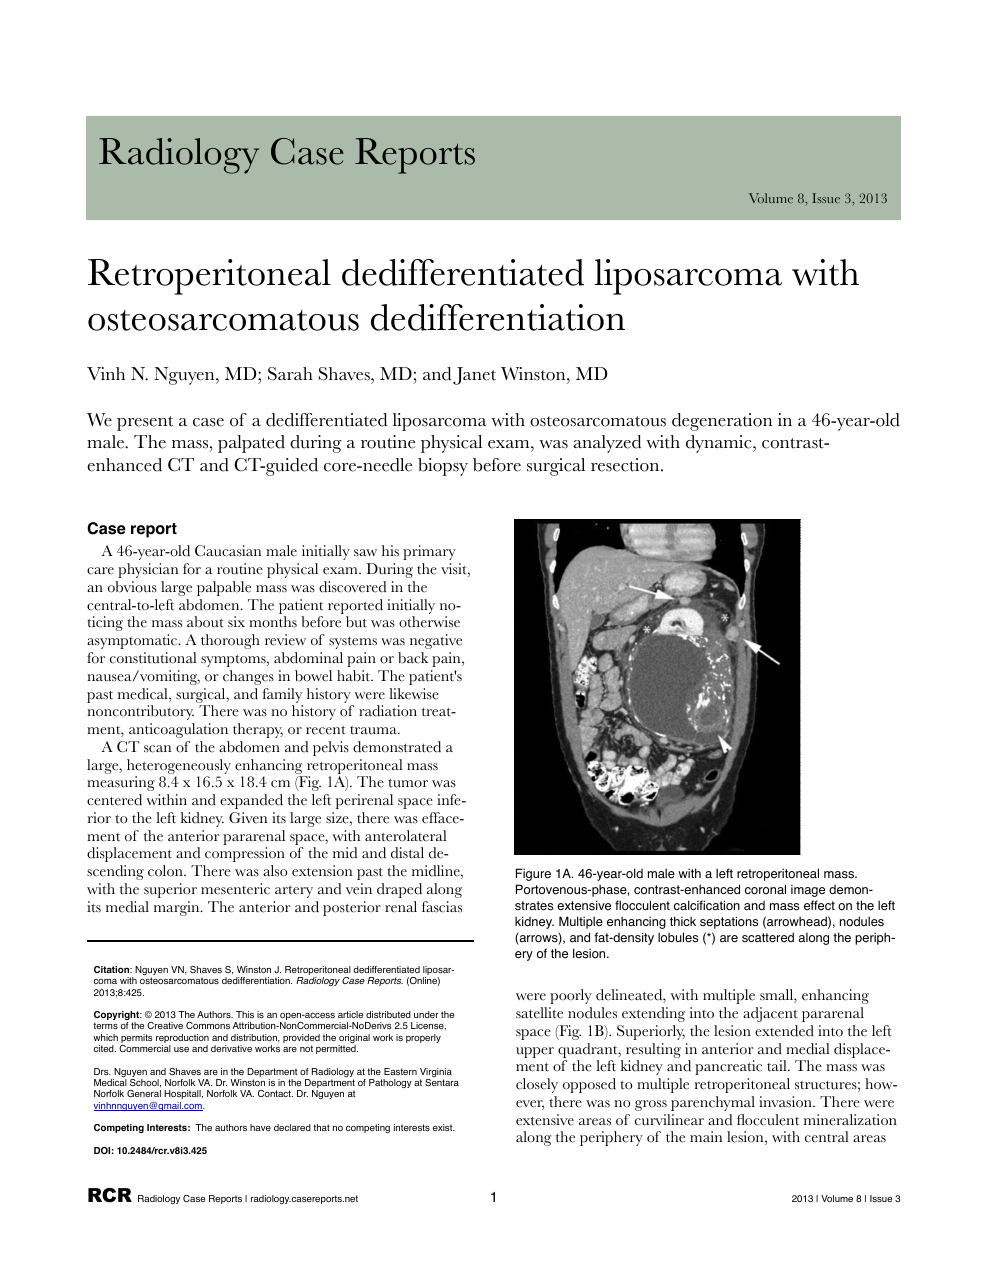 Retroperitoneal Dedifferentiated Liposarcoma With Osteosarcomatous